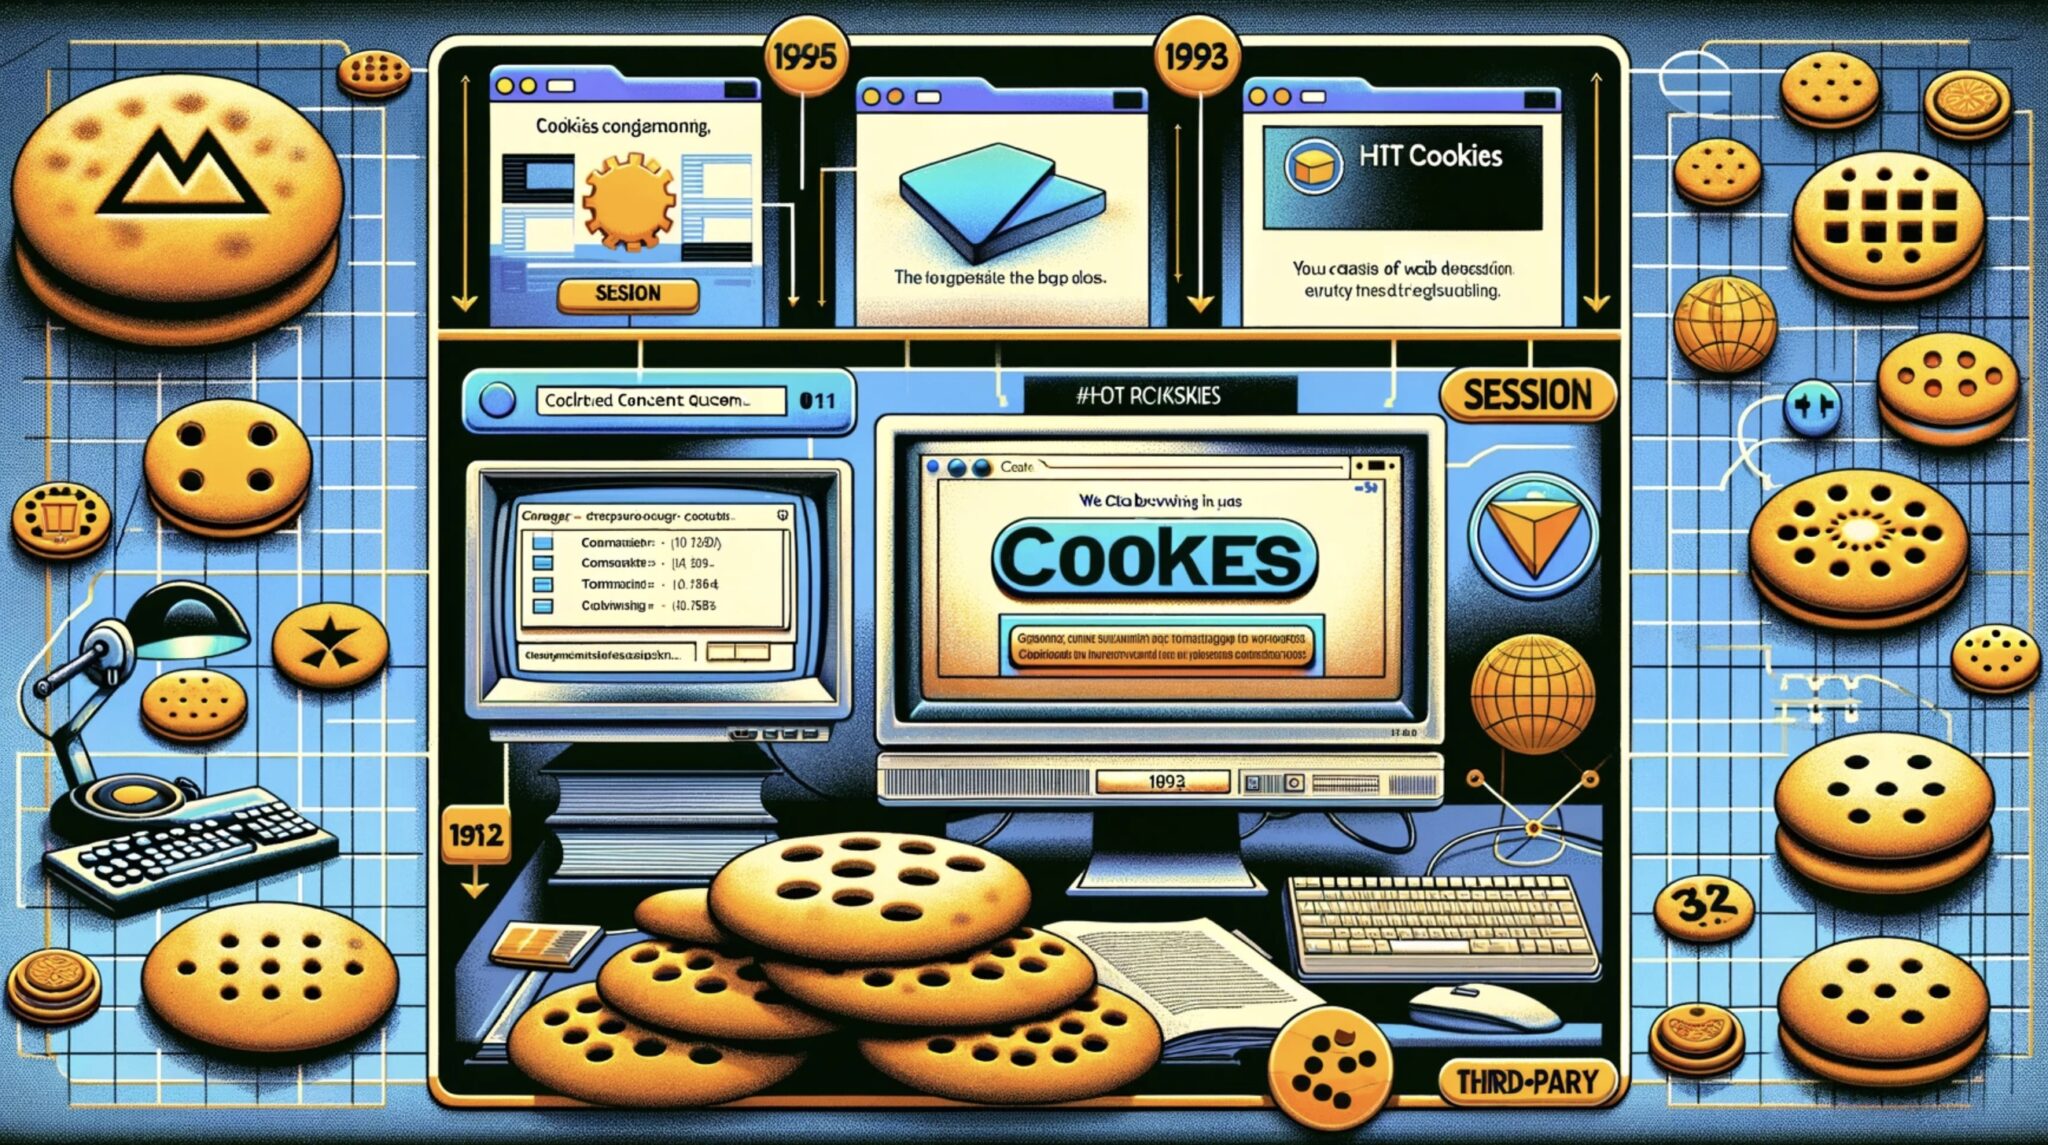 Cookies HTTP